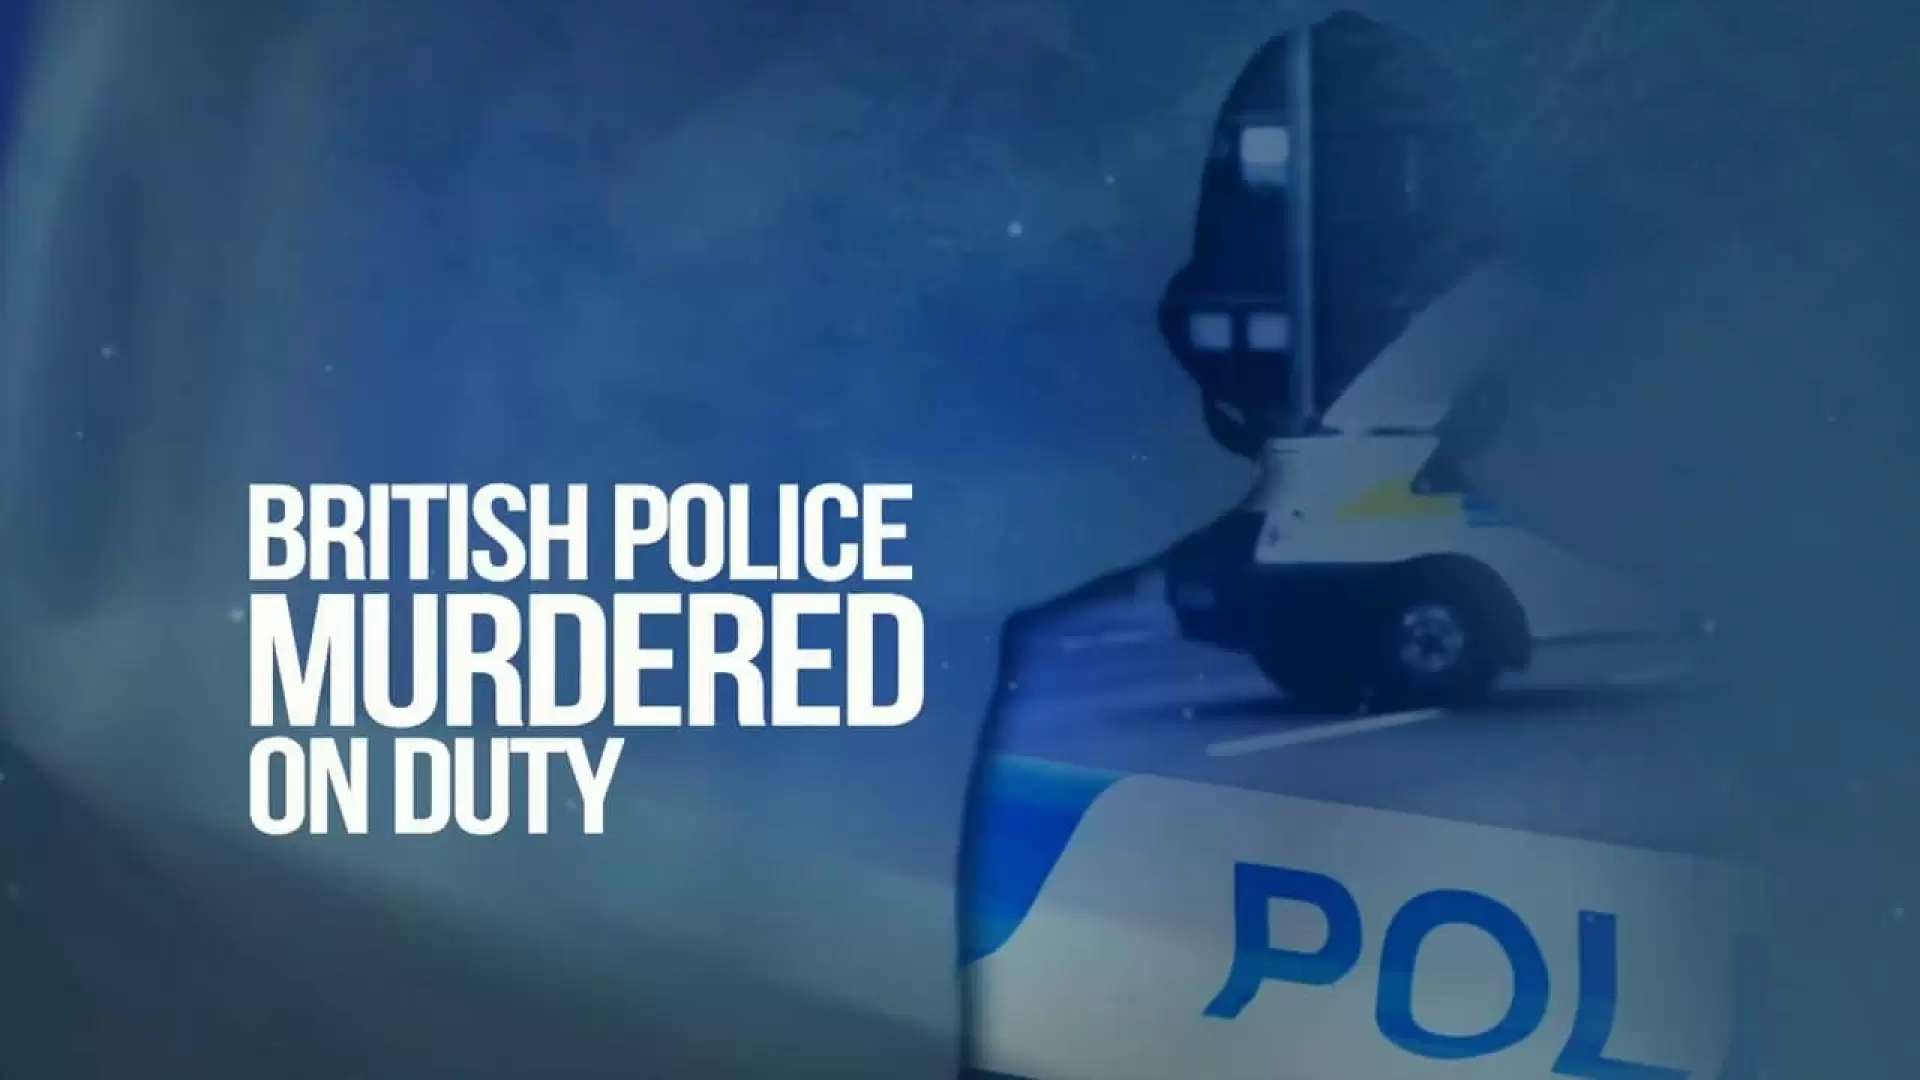 دانلود مینی سریال British Police Murdered on Duty 2016 (پلیس های انگلیسی کشته شده در ماموریت)